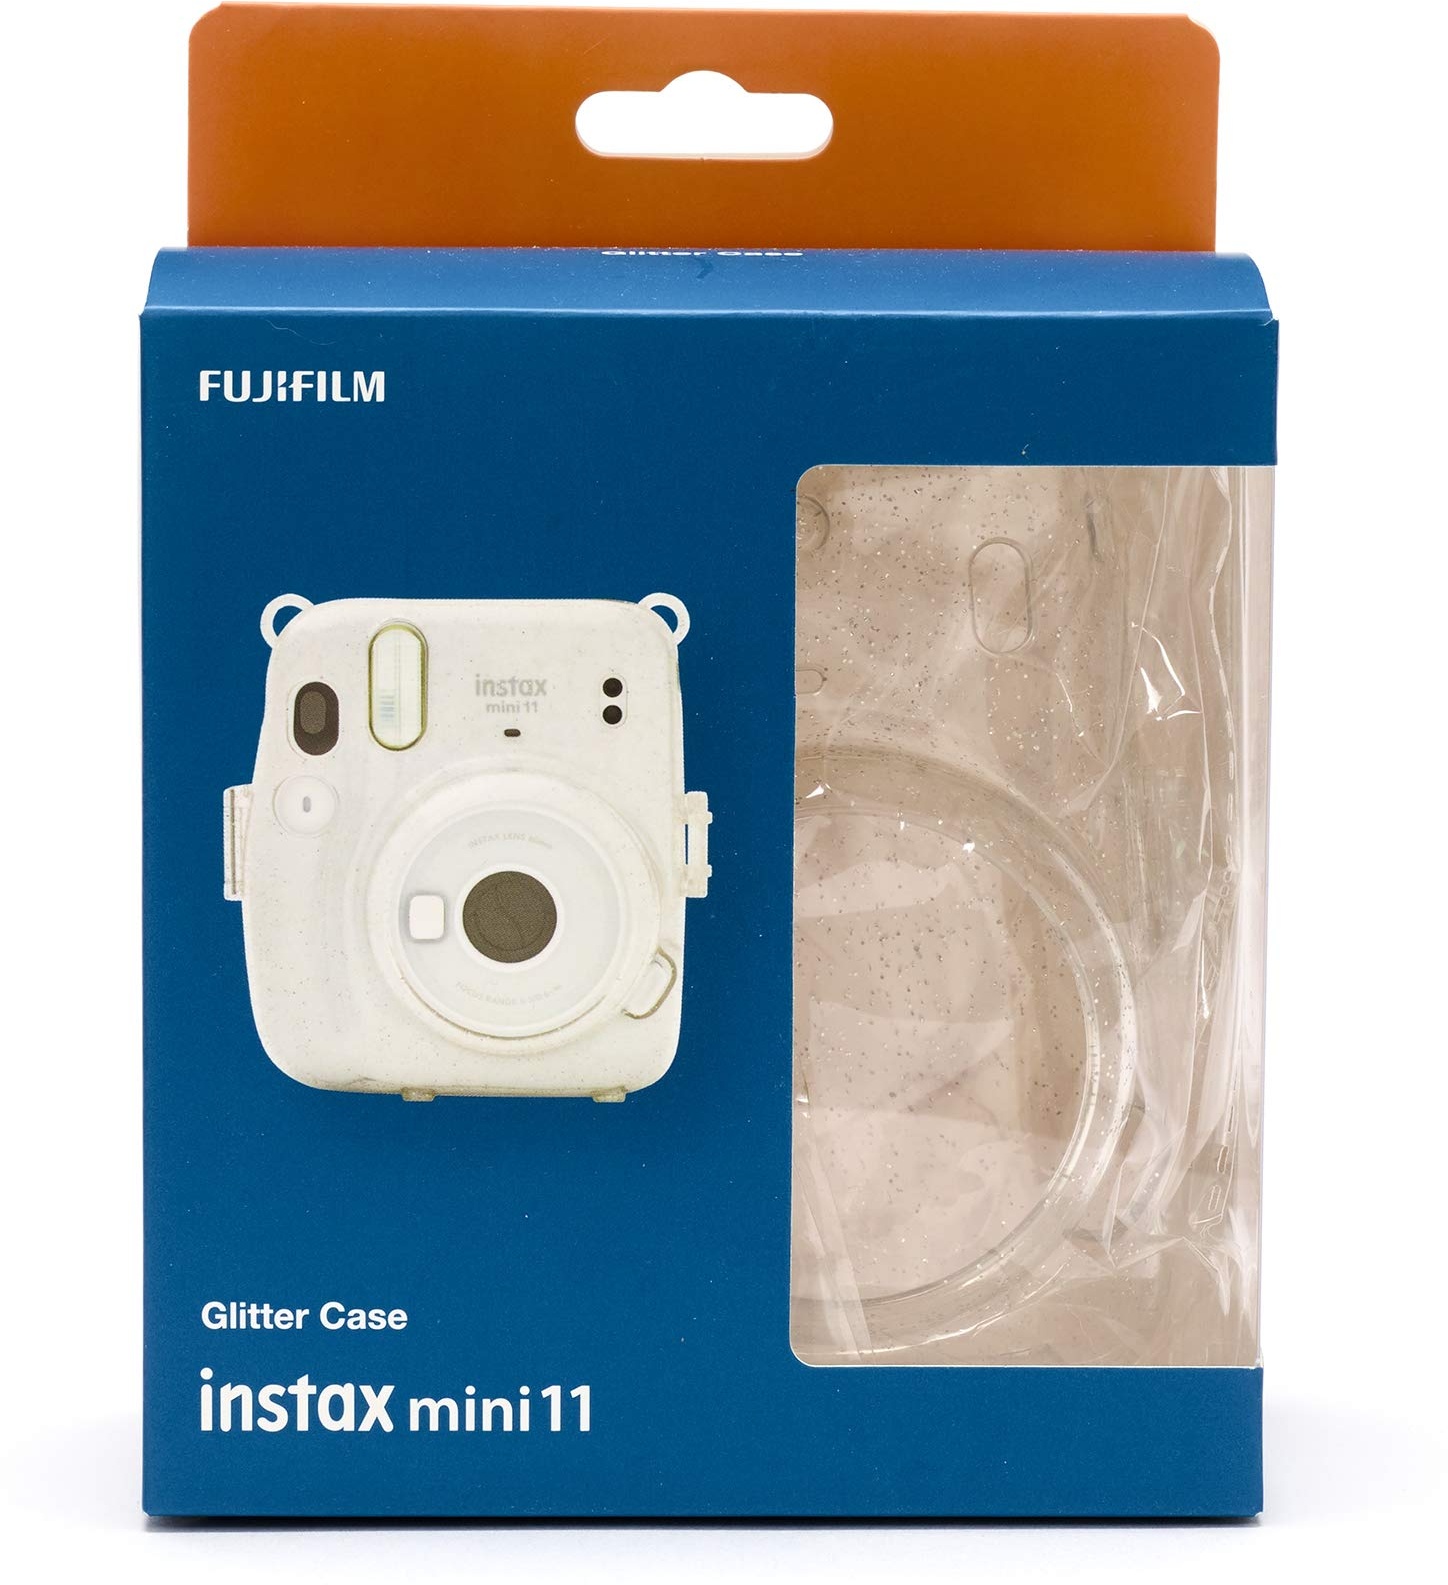 instax mini camera